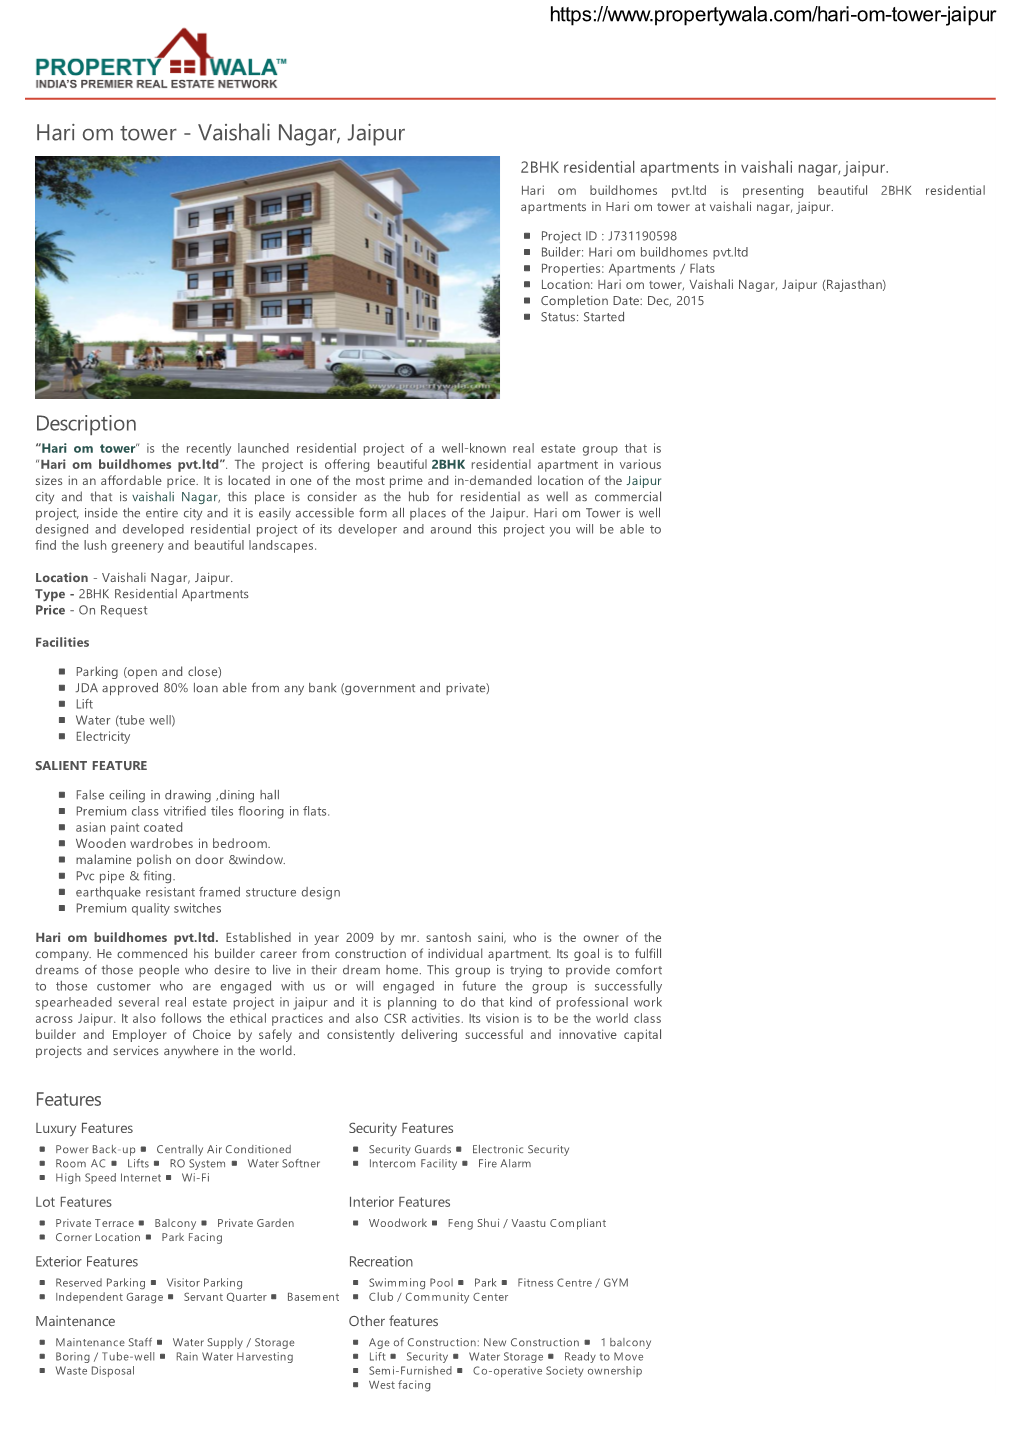 Hari Om Tower - Vaishali Nagar, Jaipur 2BHK Residential Apartments in Vaishali Nagar, Jaipur